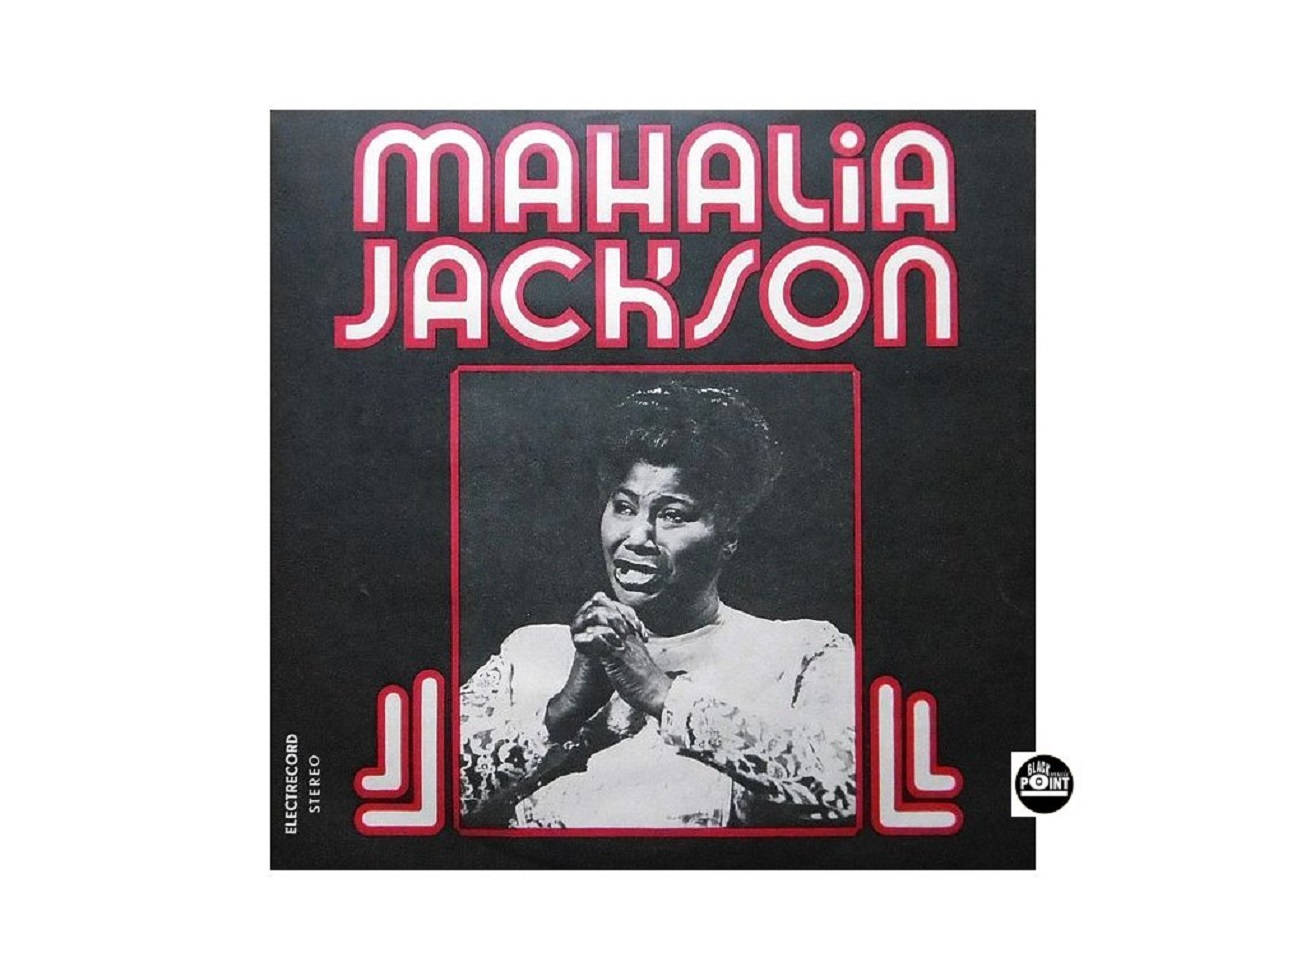 Cantanteestadounidense De Gospel Mahalia Jackson Álbum De 1977 Fondo de pantalla